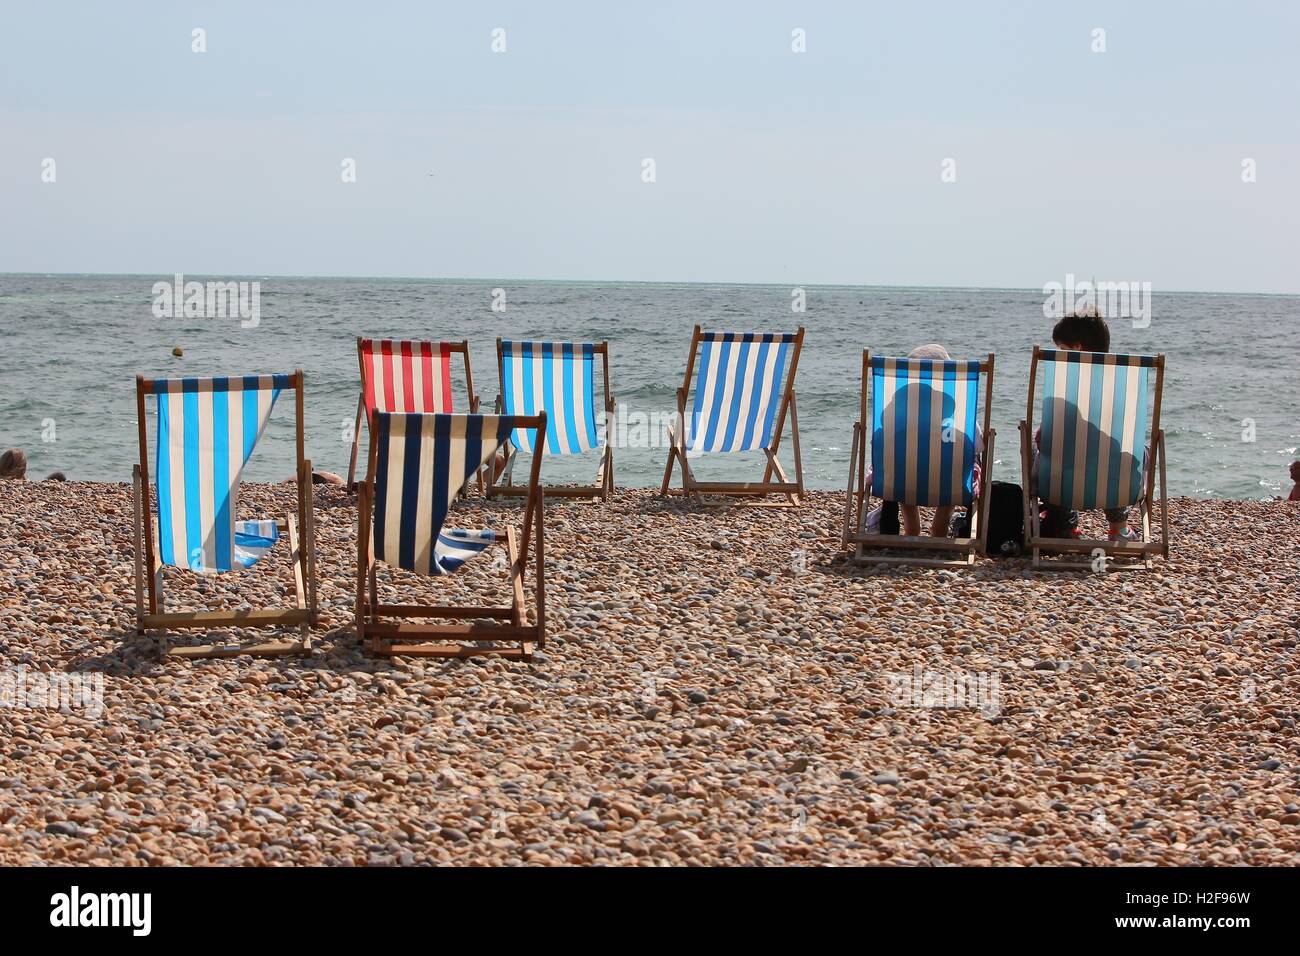 Bunt gestreiften Strand Liegestühle auf den gepflasterten Strand, Brighton, England Stockfoto